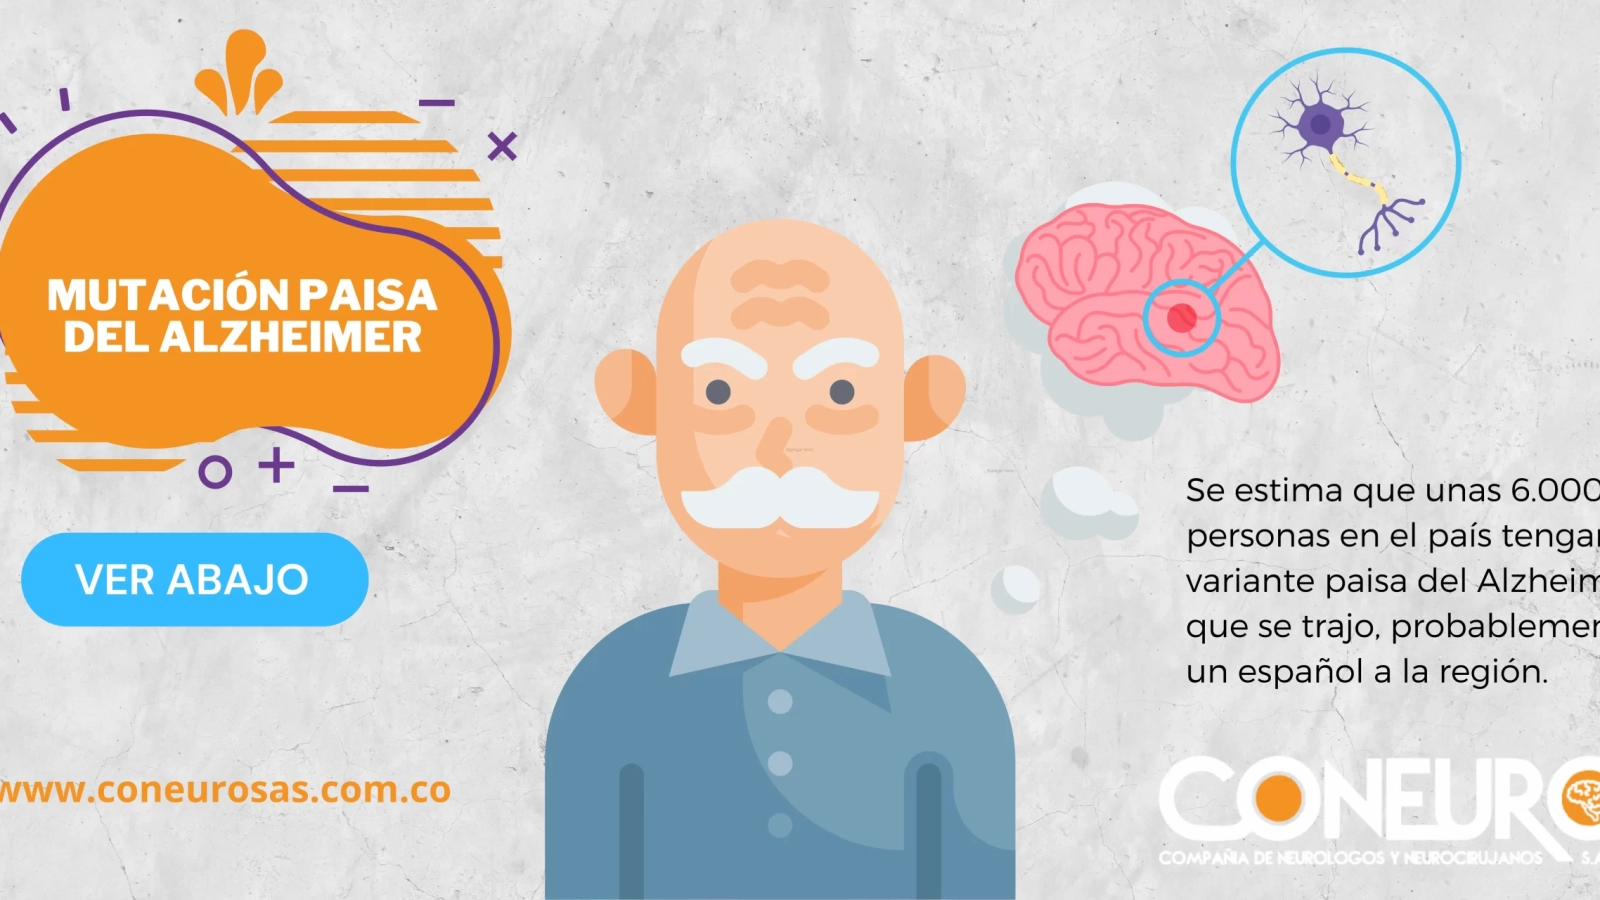 Se estima que unas 6.000 personas en el país tengan la variante paisa del Alzheimer, que se trajo, probablemente, un español a la región.